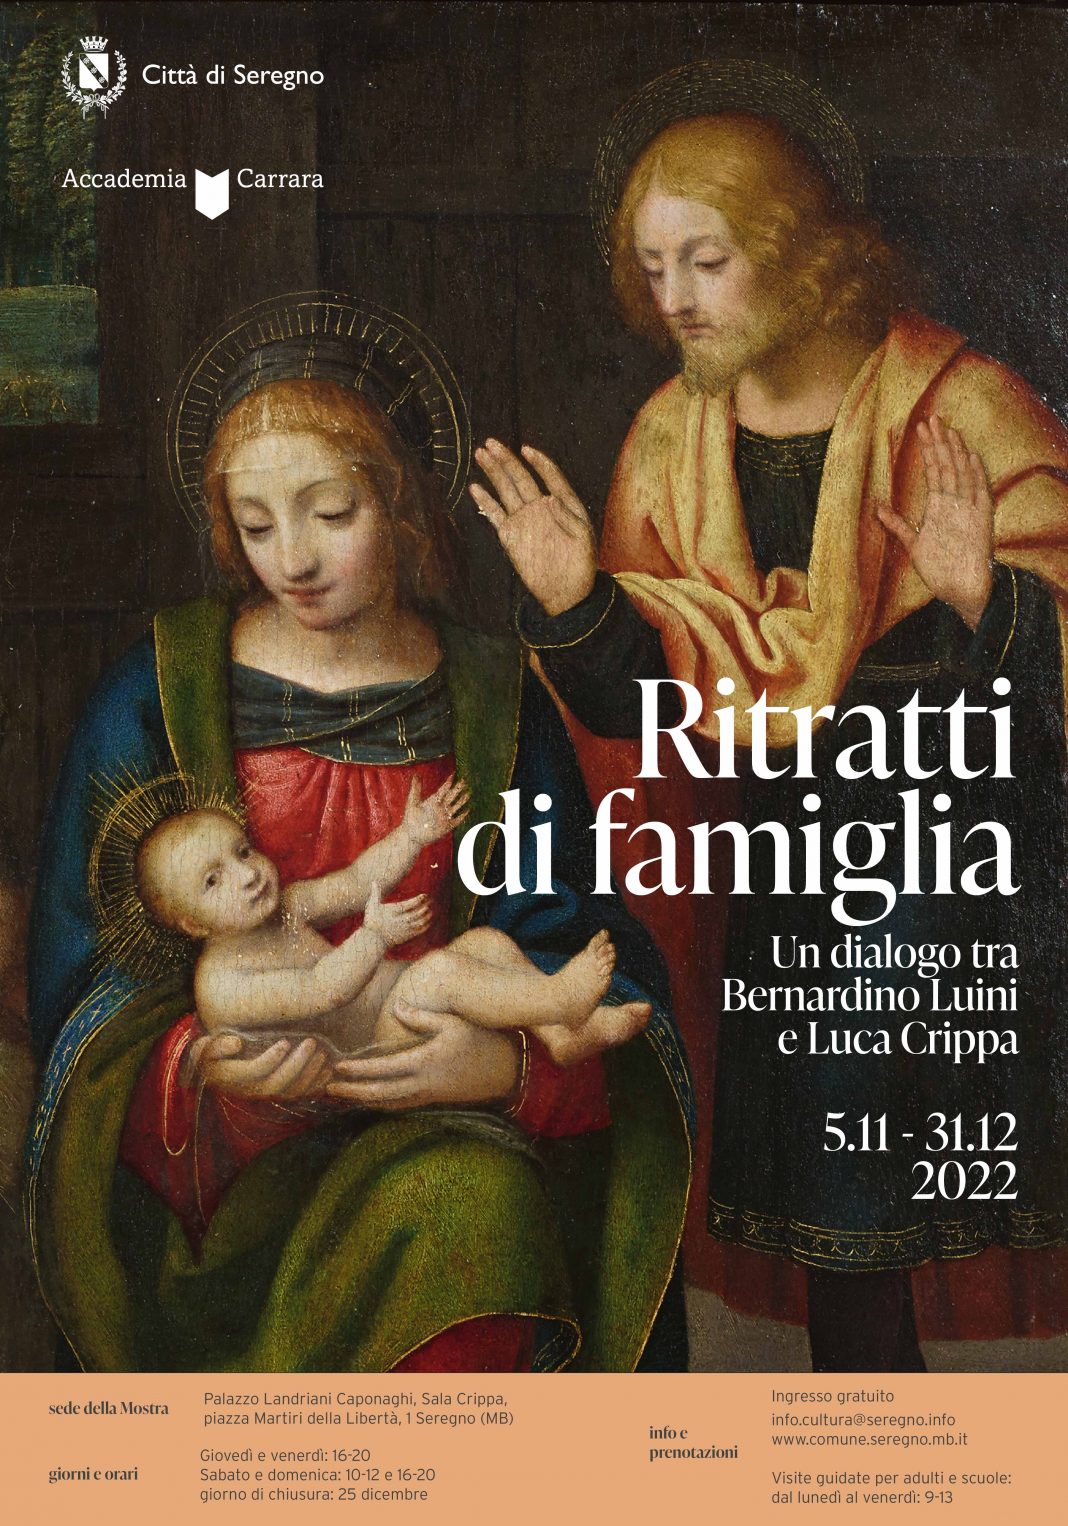 Ritratti di famiglia. Un dialogo tra Bernardino Luini e Luca Crippahttps://www.exibart.com/repository/media/formidable/11/img/e96/Manfesto-light-1068x1526.jpg